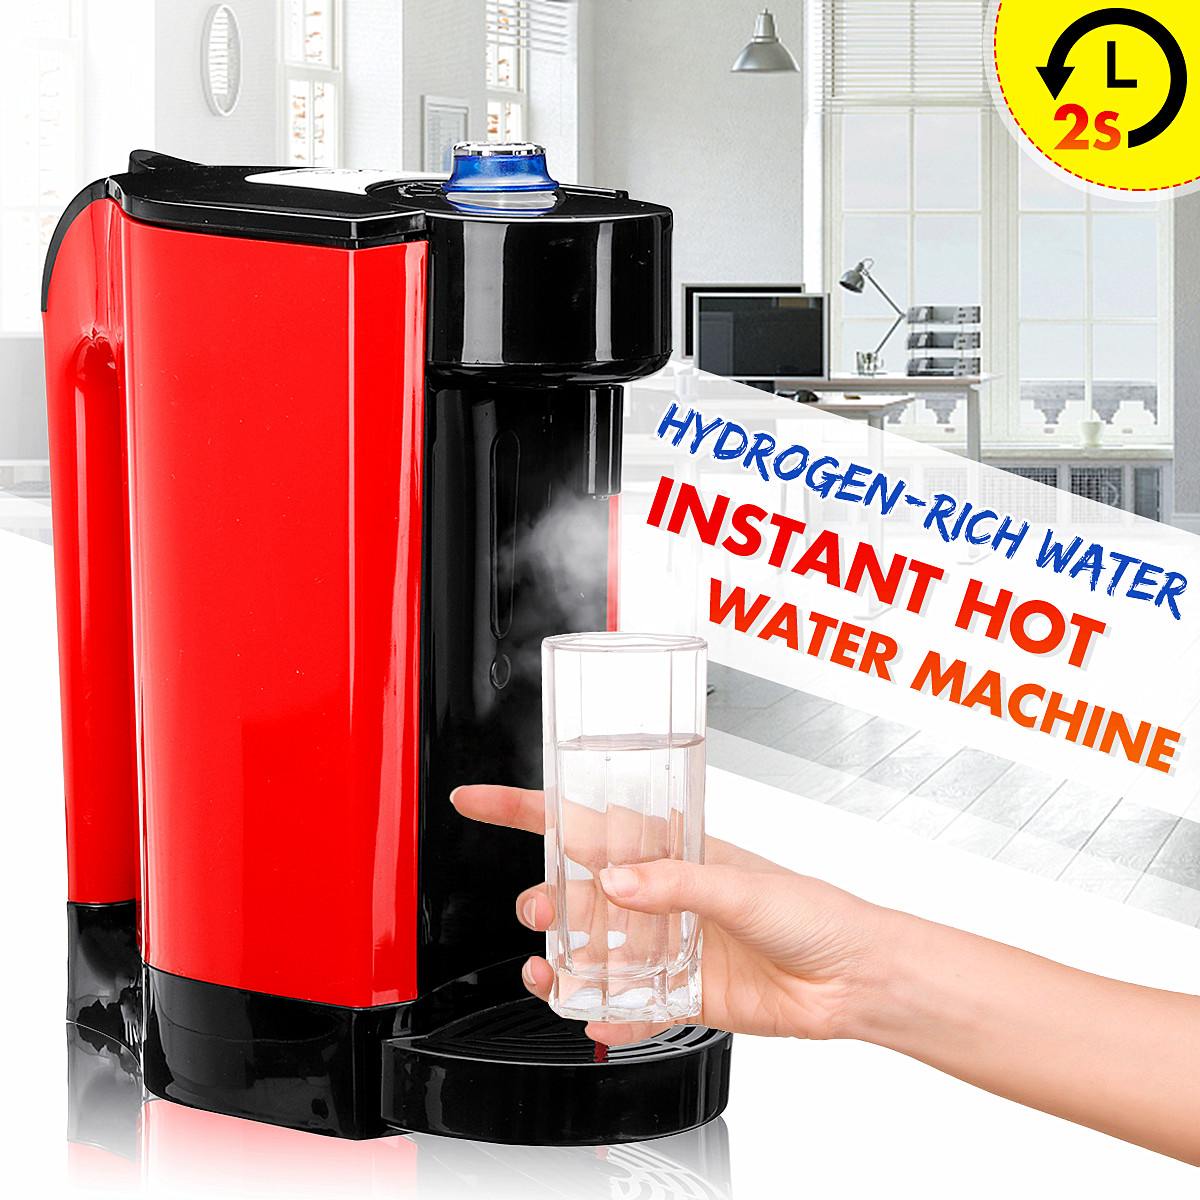 3L Healthy Rich Hydrogen Water Bottle Alkaline Water Dispenser Household Instant Hot Water Heater Hydrogen Water Generator 220V